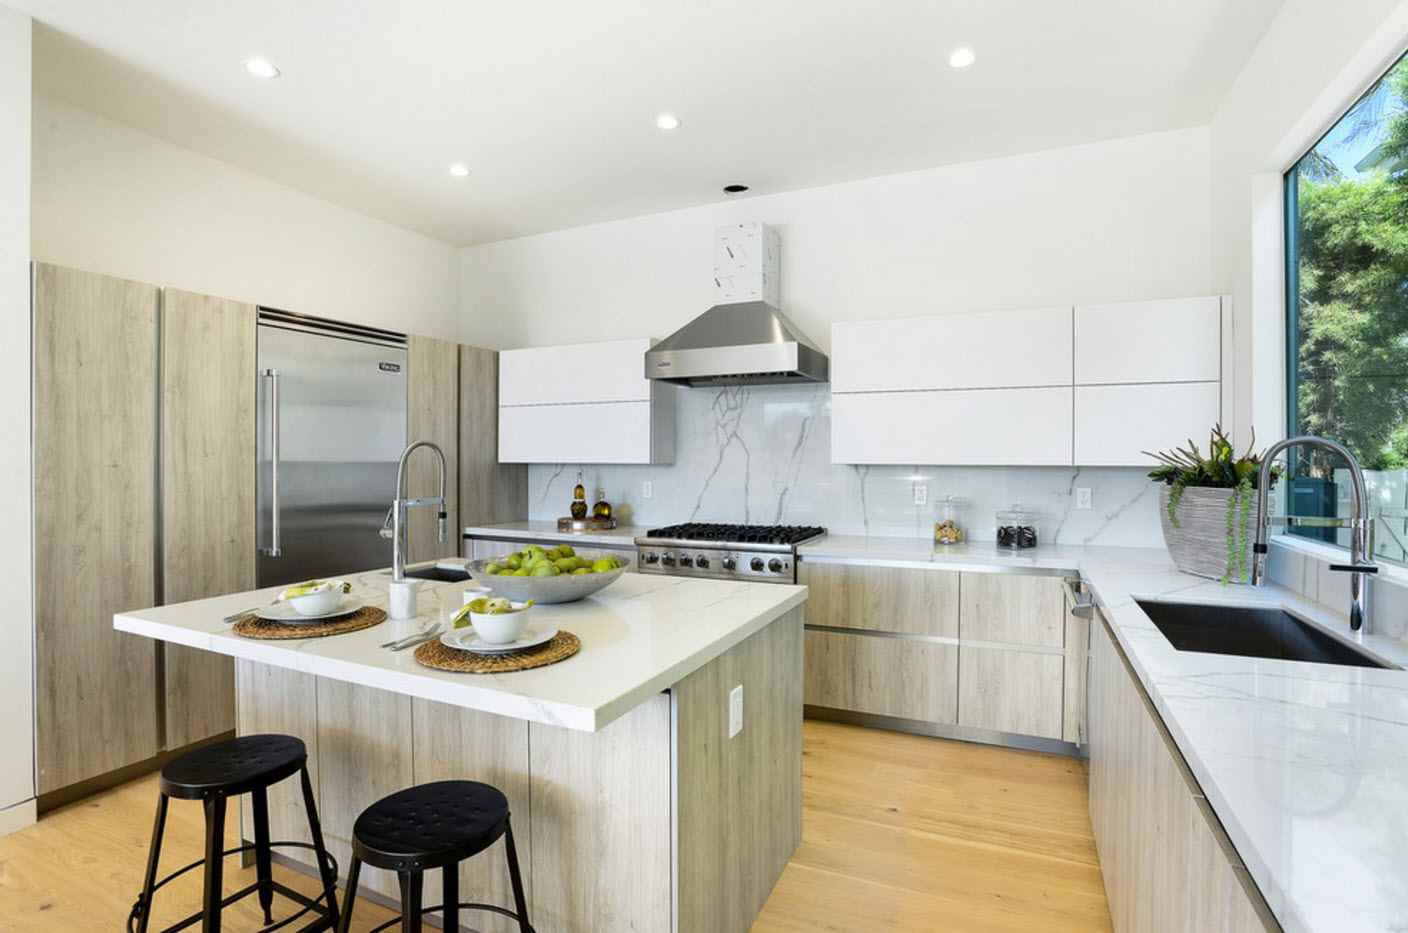 مثال على تصميم غير عادي للمطبخ من 12 متر مربع